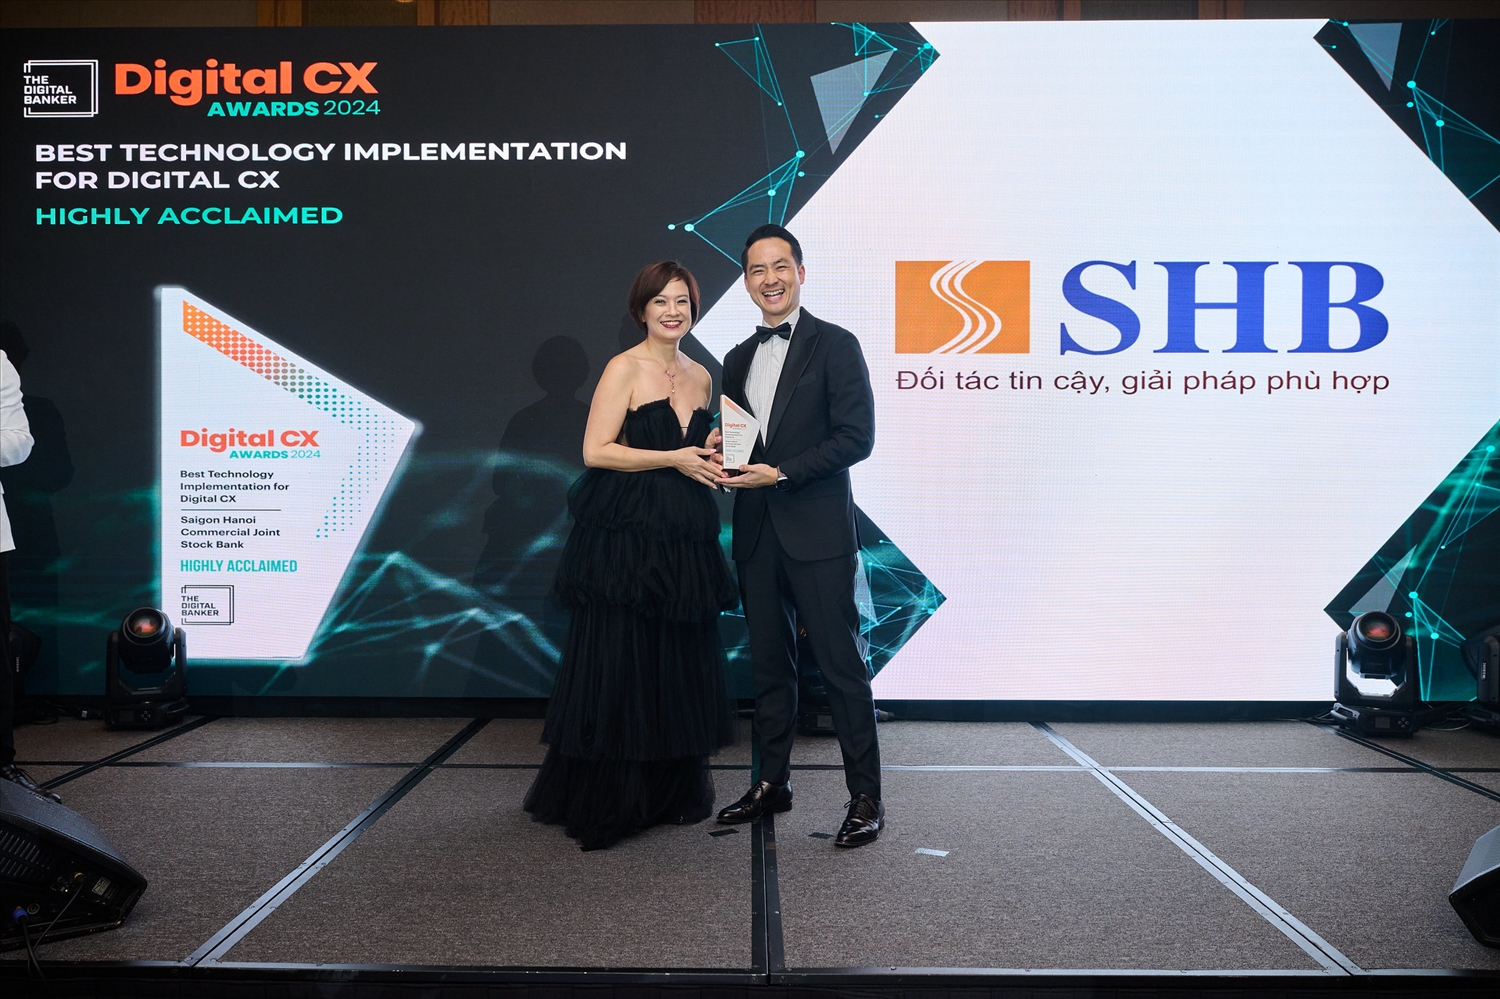 Ông Dương Quốc Tú – Phó Giám đốc Khối Ngân hàng Số đại diện SHB đón nhận giải thưởng “Best Technology Implementation for Digital CX” (Áp dụng công nghệ tốt nhất cho trải nghiệm số) cho giải pháp “Hệ thống phê duyệt tín dụng tự động ACAS”